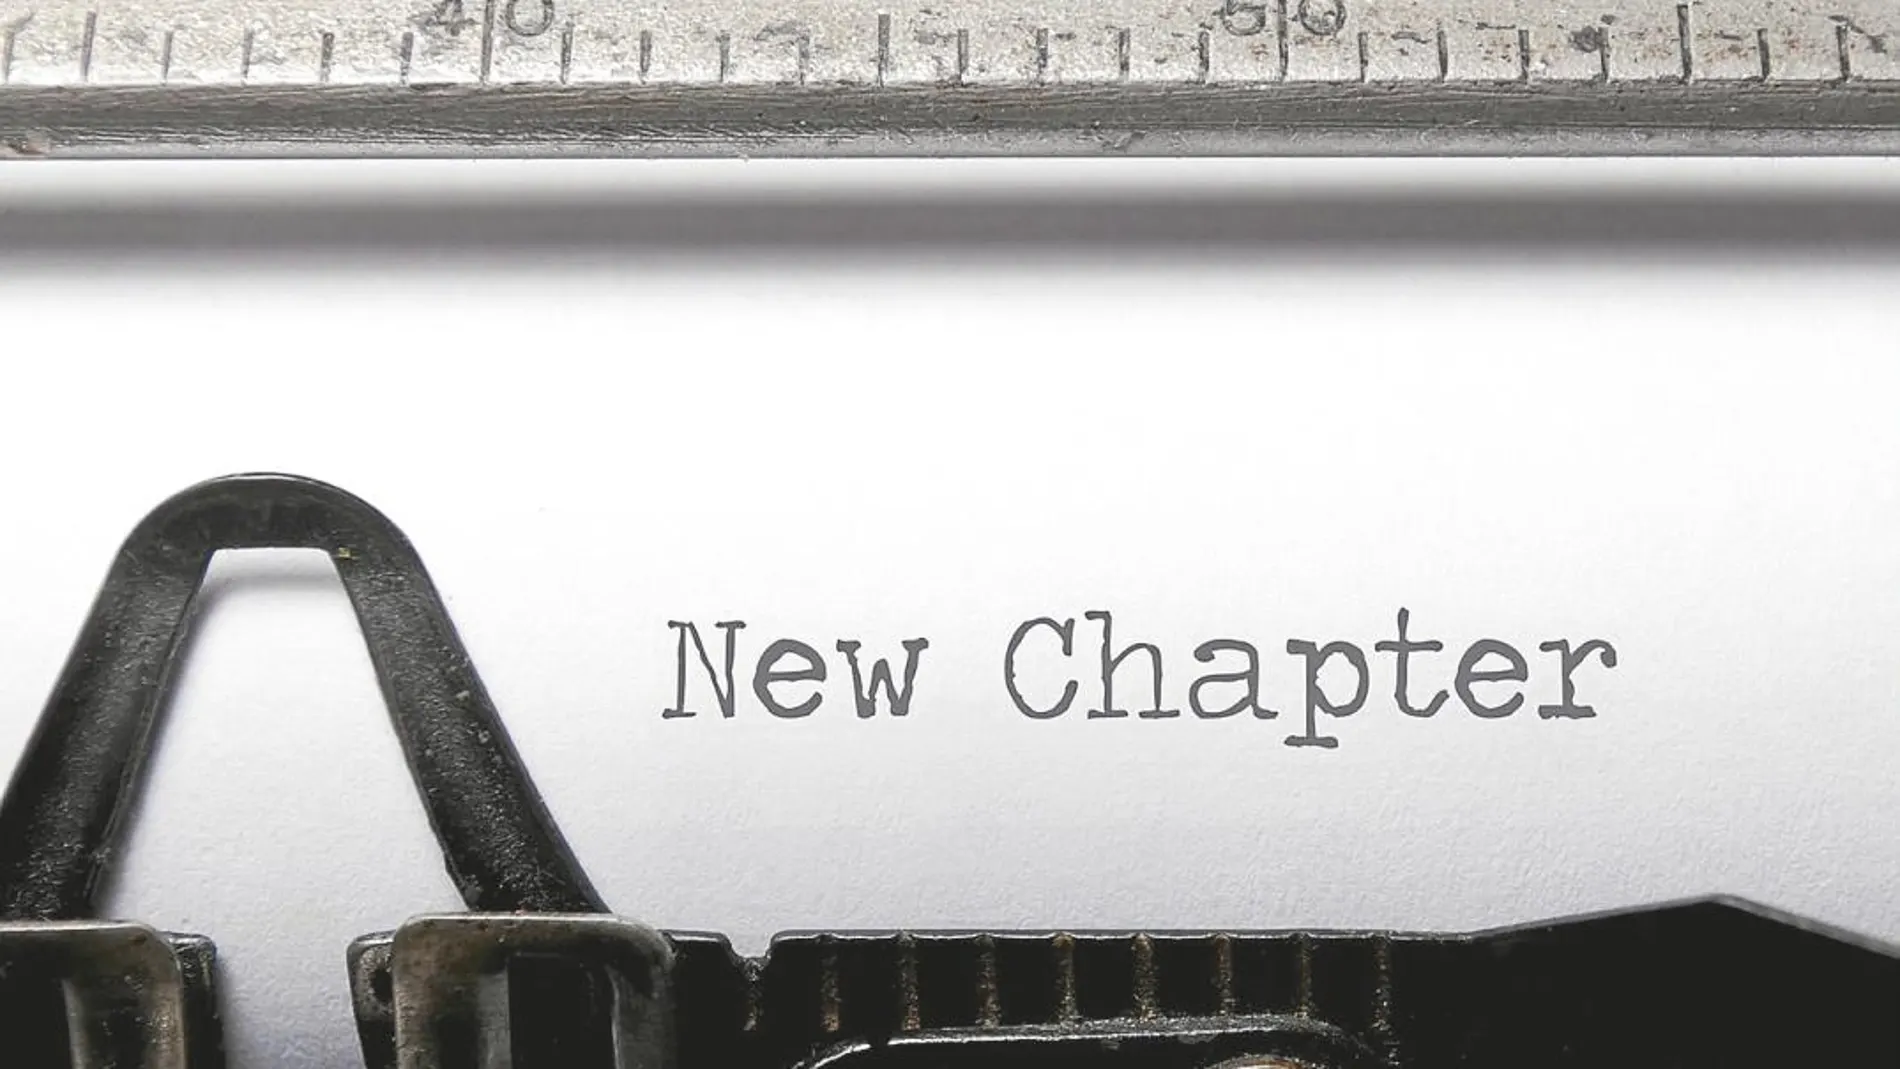 New chapter sobre un folio en una máquina de escribir